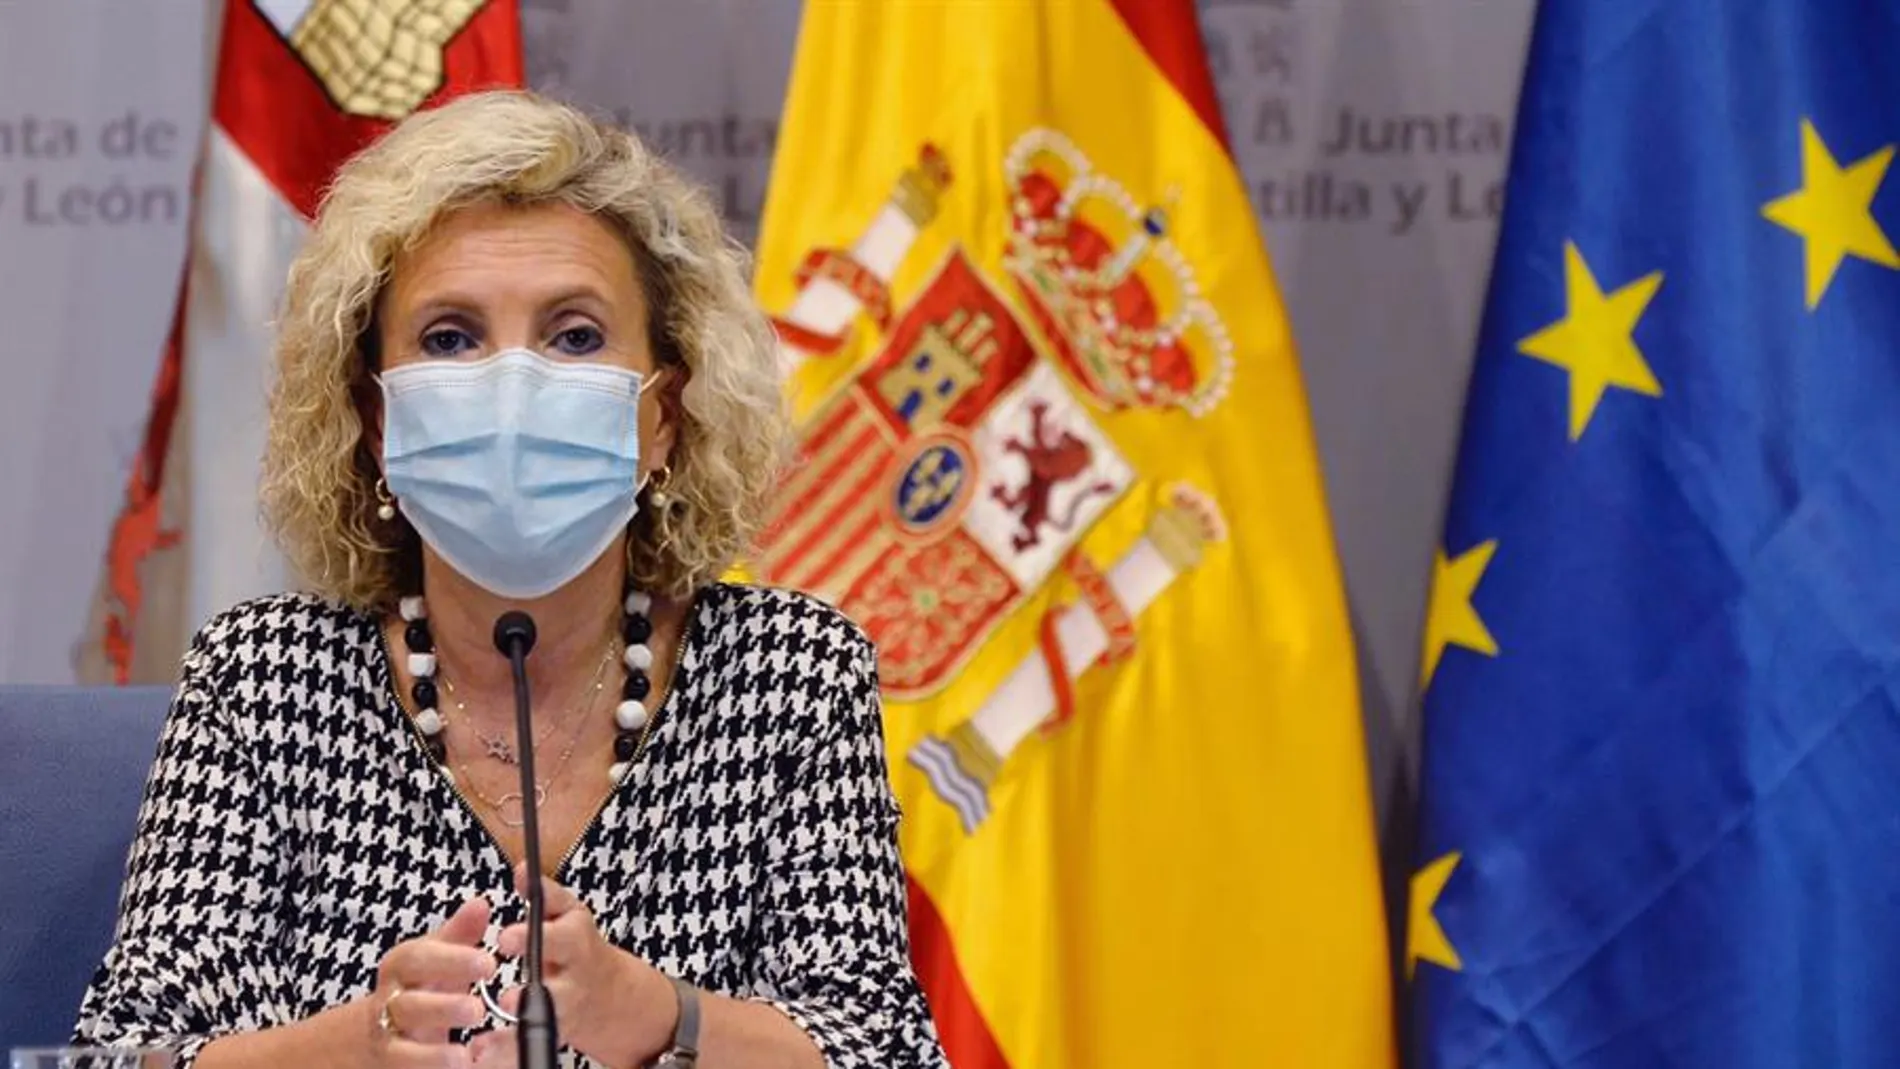  La consejera de Sanidad de la Junta de Castilla y León, Verónica Casado